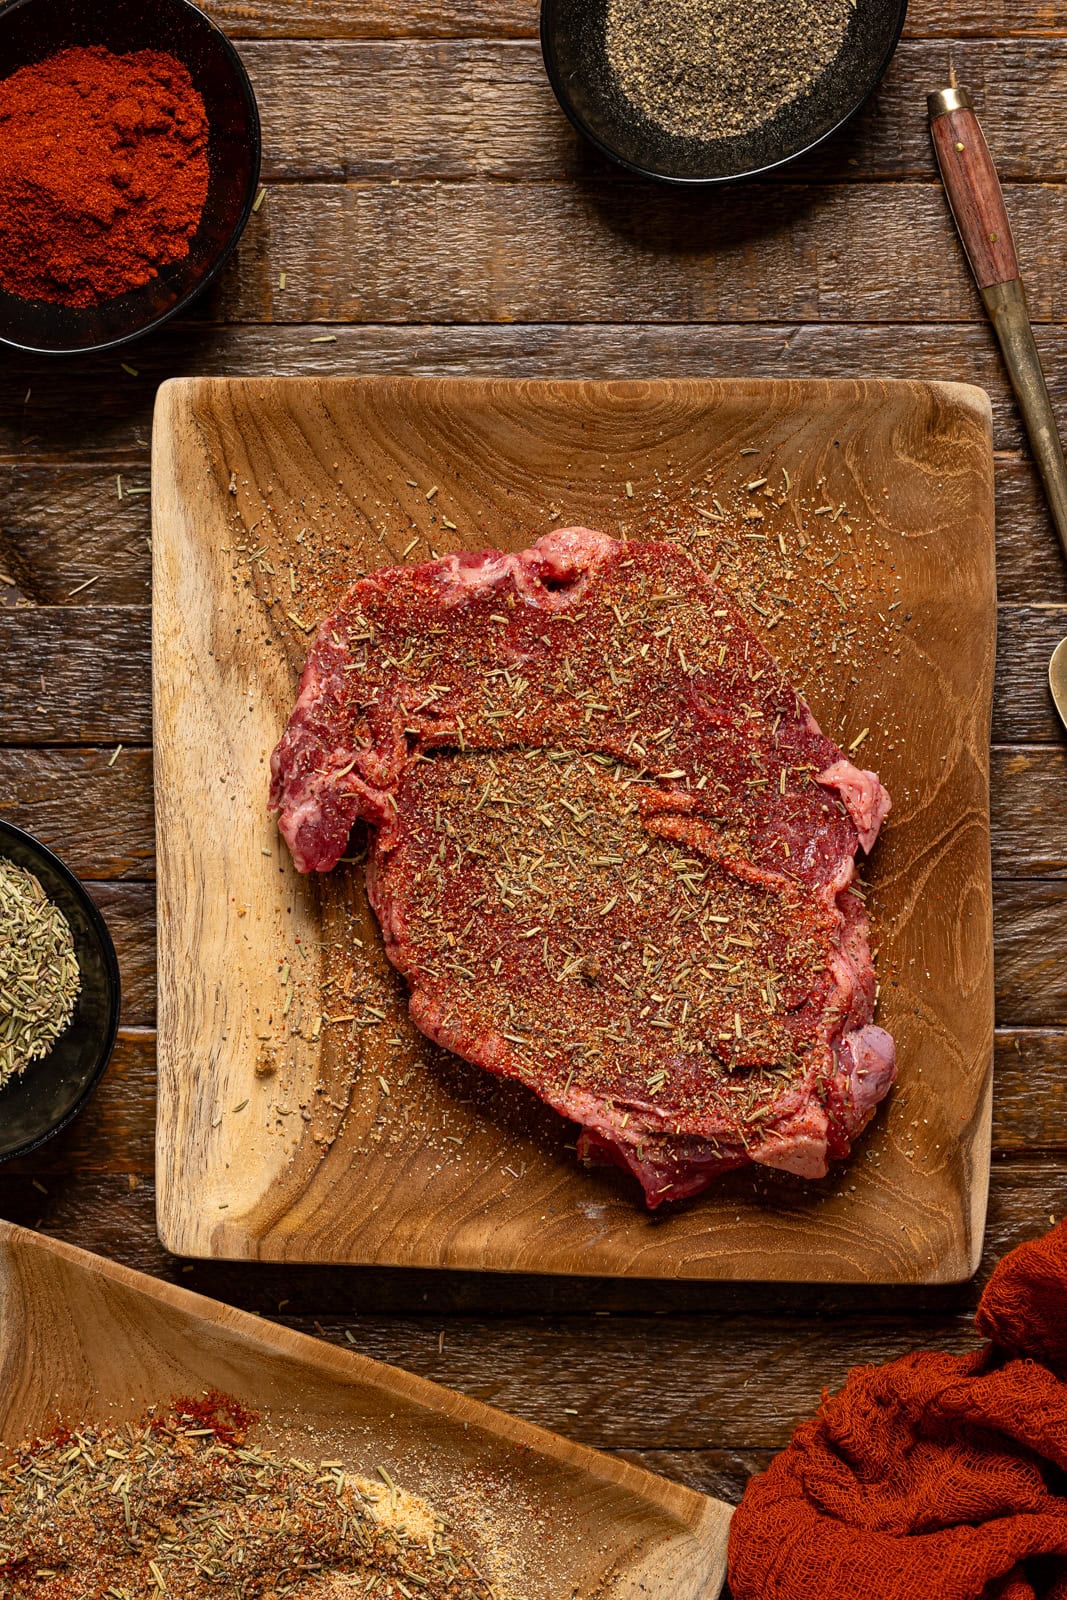 Seasoned steak on a brown wood plate with seasonings on the side.